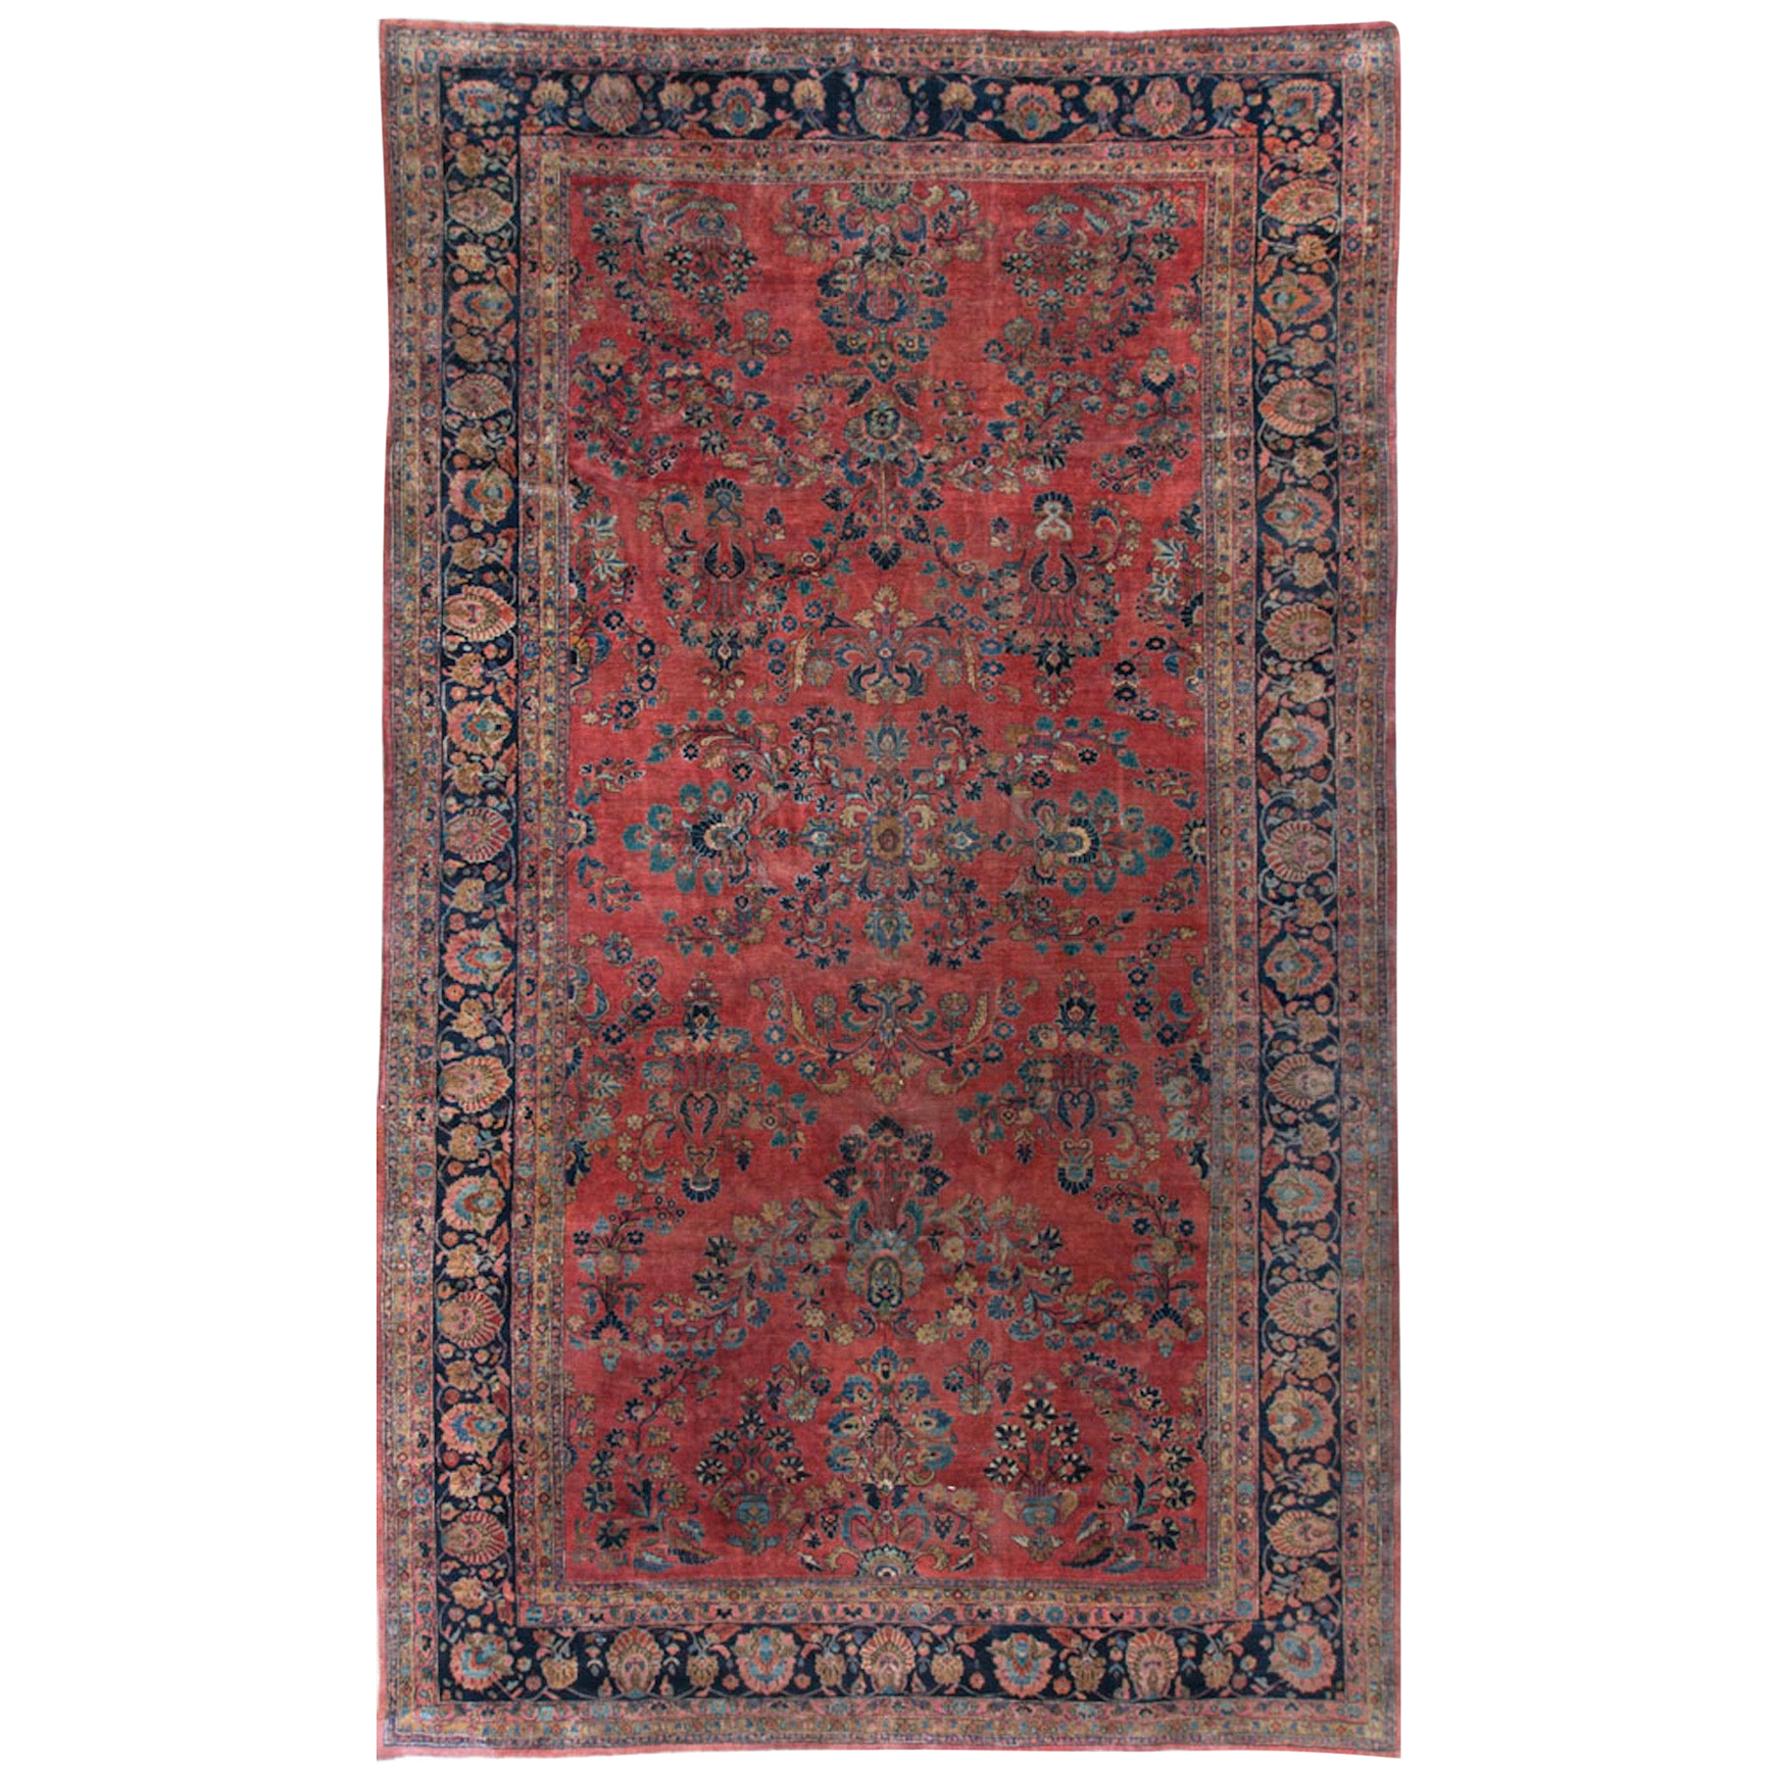 Antiker persischer Sarouk-Teppich in Übergröße, um 1900, 10'5" x 17'6" groß.